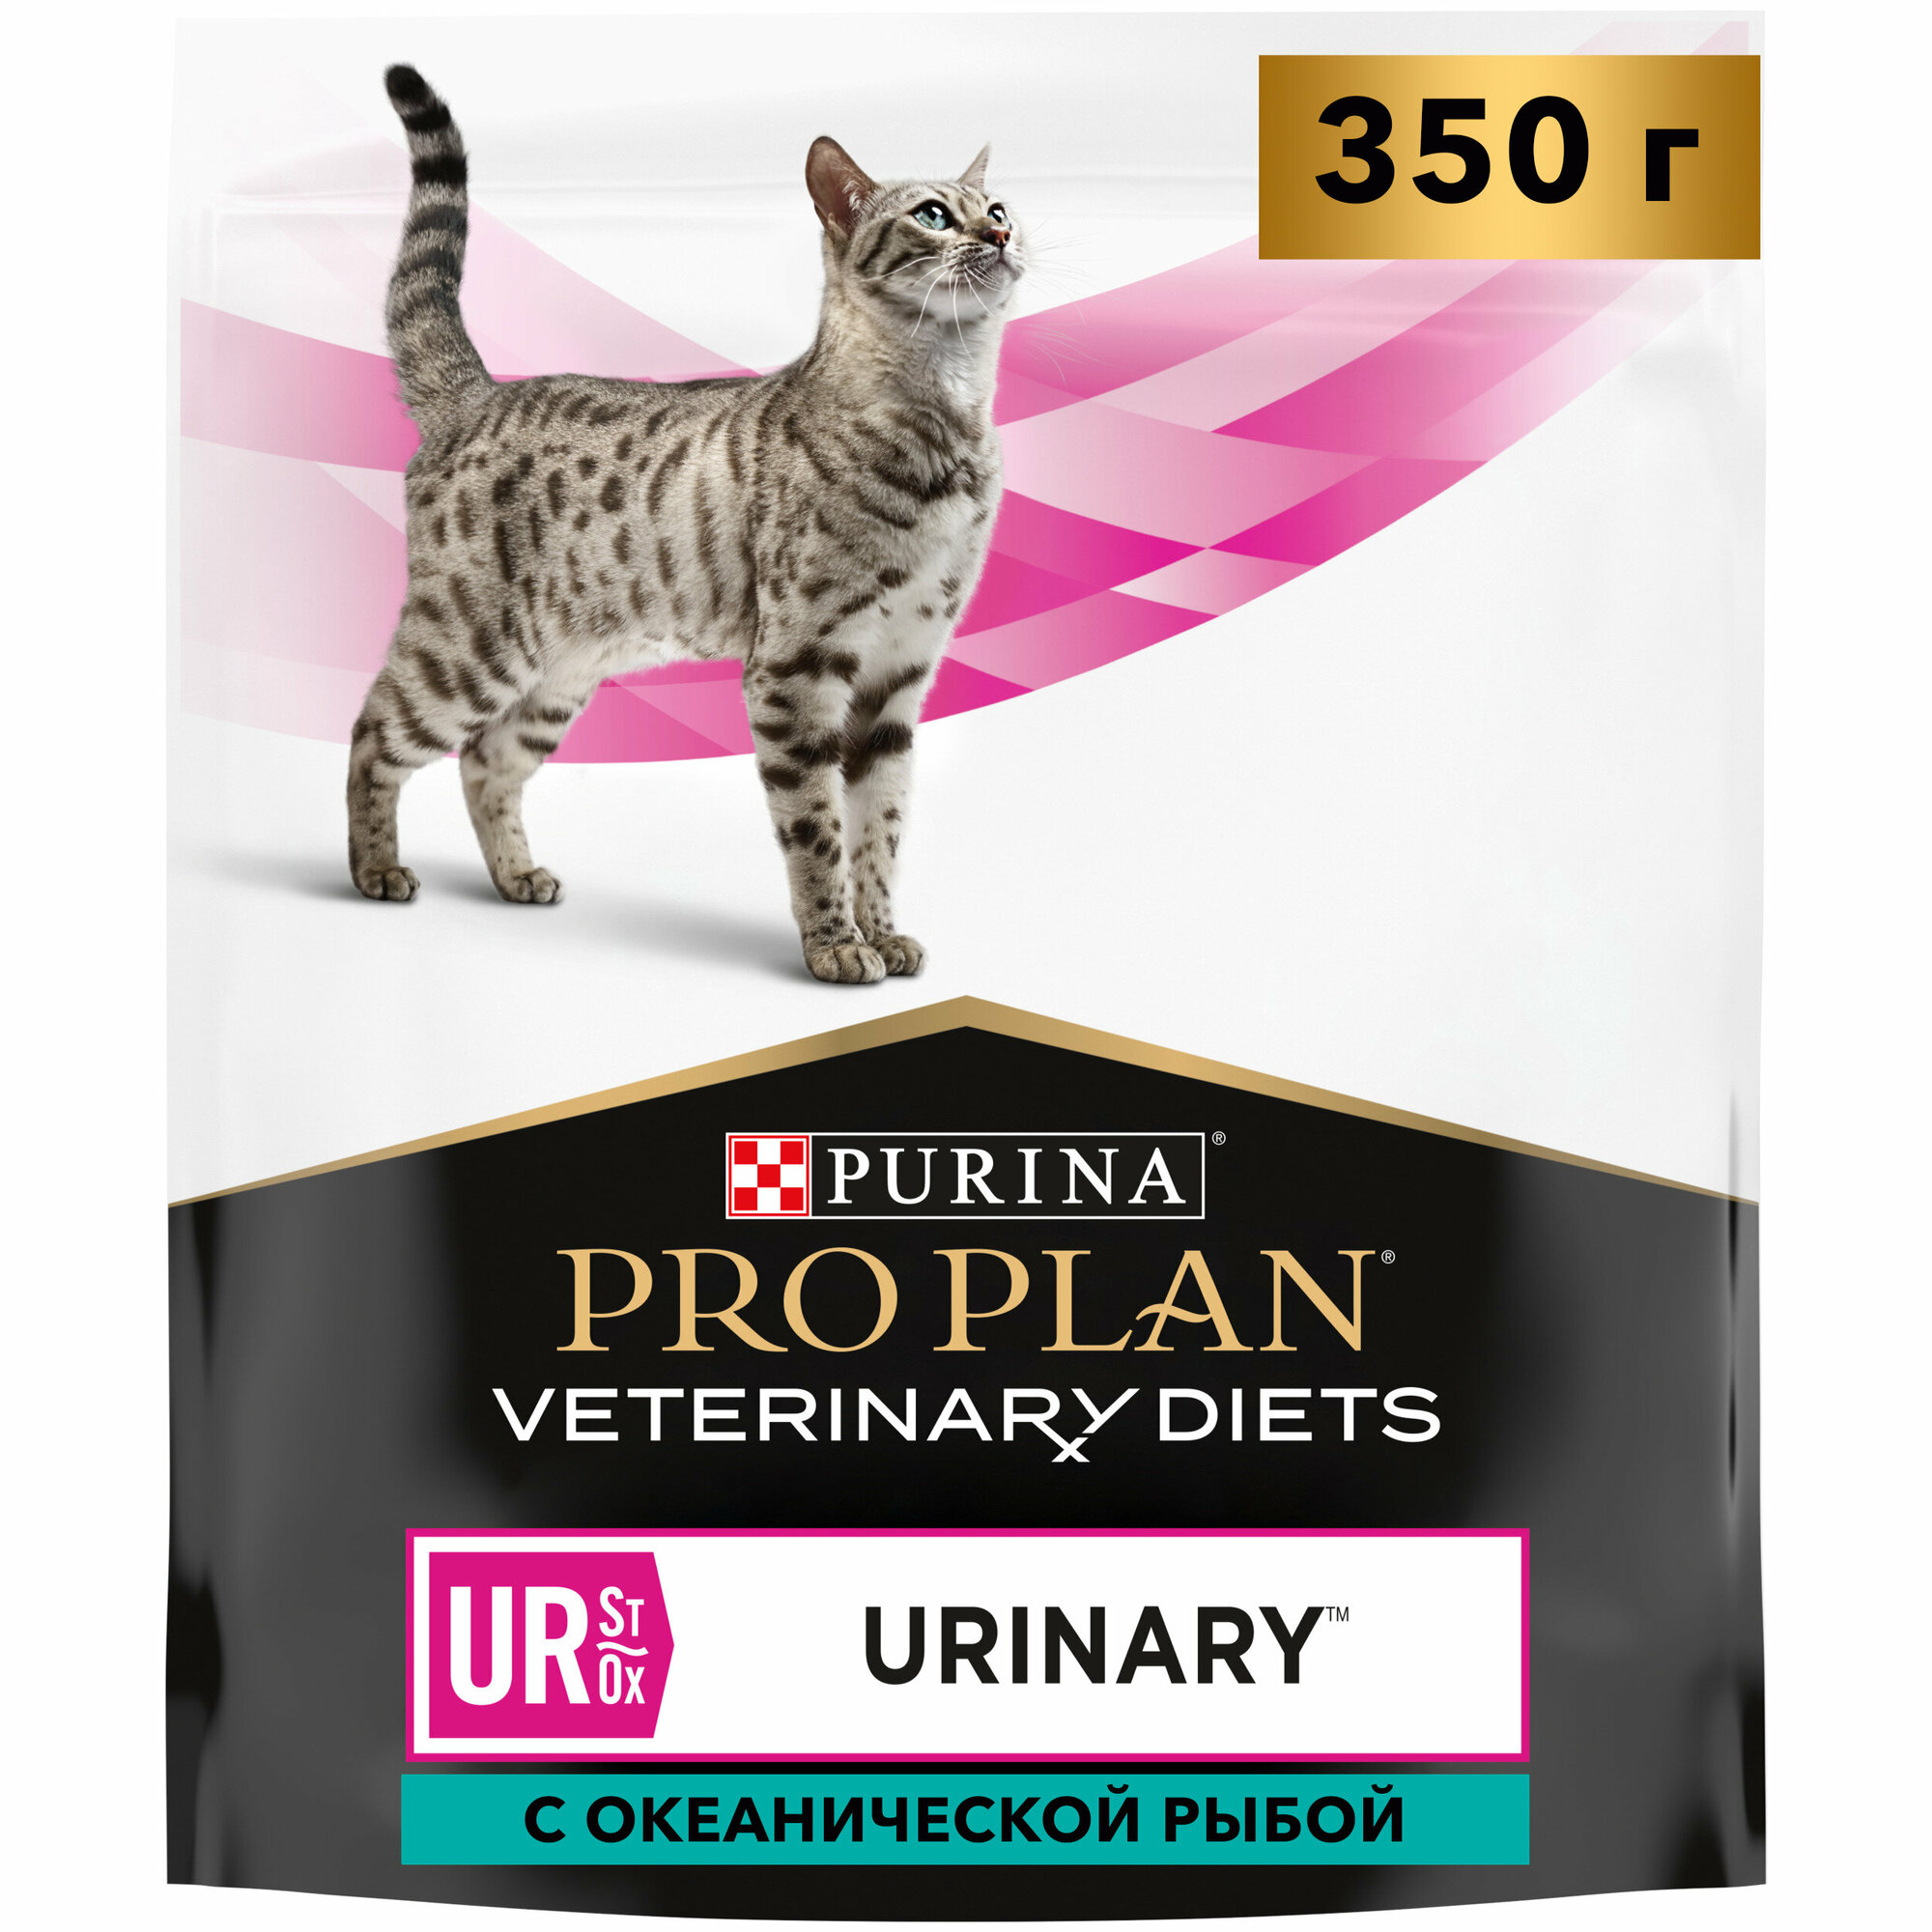 Сухой корм для кошек Pro Plan Veterinary Diets Urinary Ur St/Ox при болезни нижних отделов мочевыводящих путей с океанической рыбой